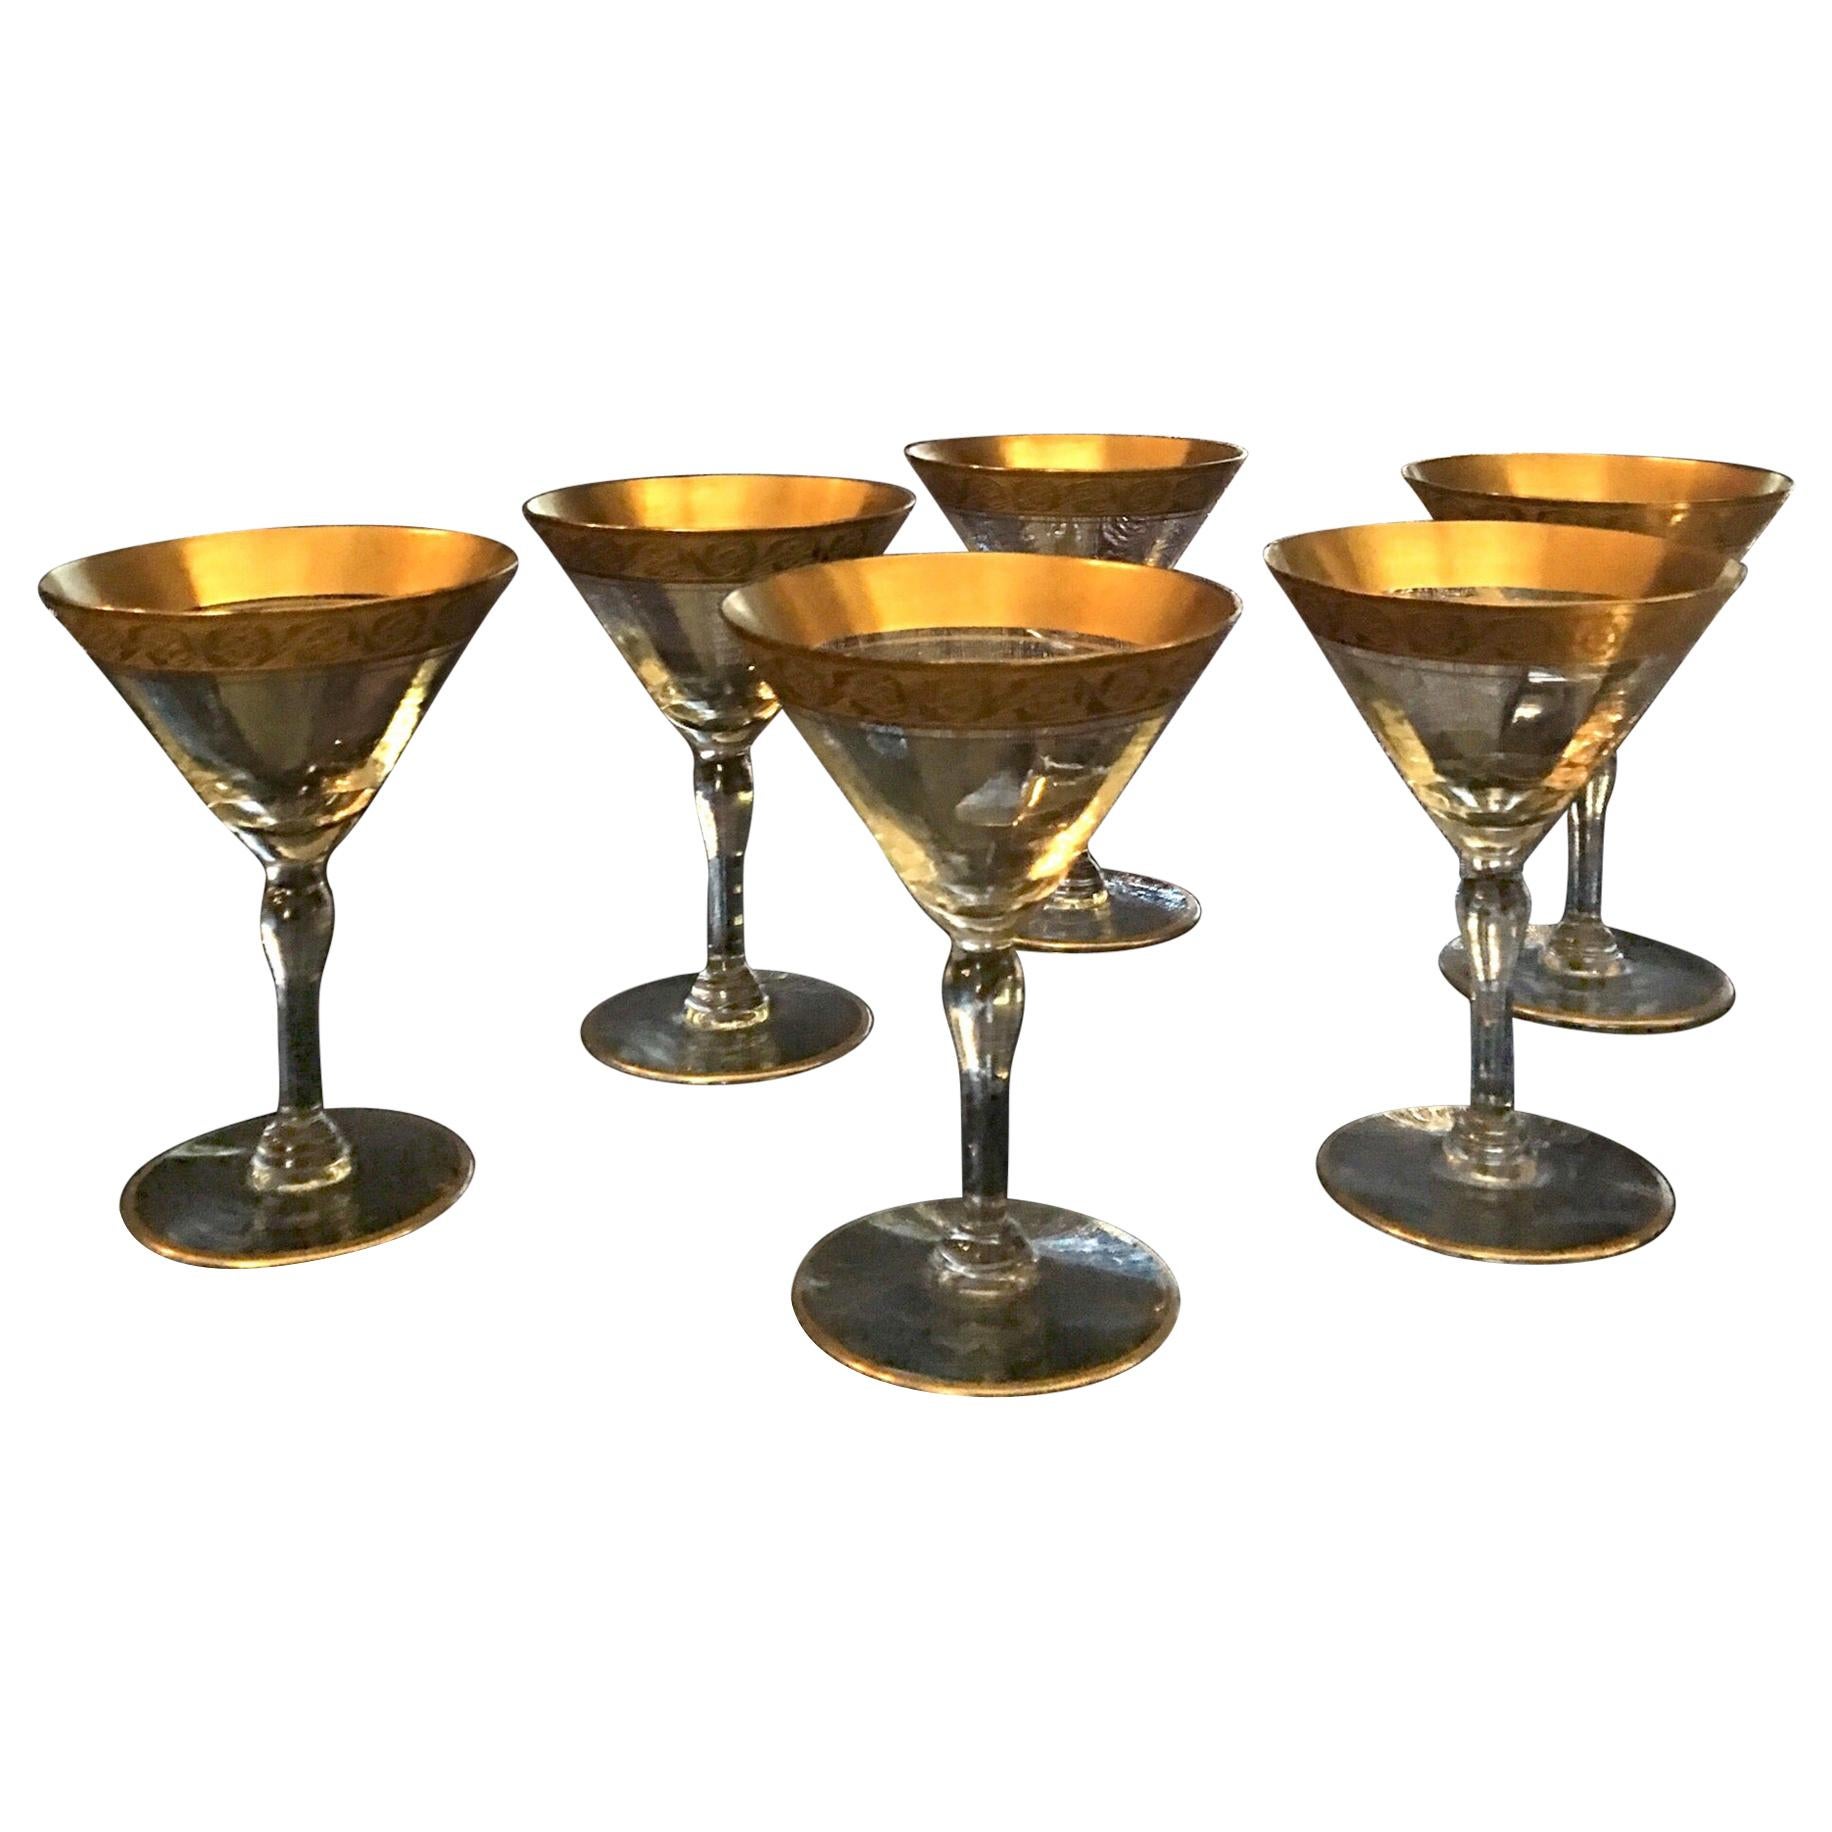 Vintage Set of 6 Etched Floral Gold Band Champagne Glasses